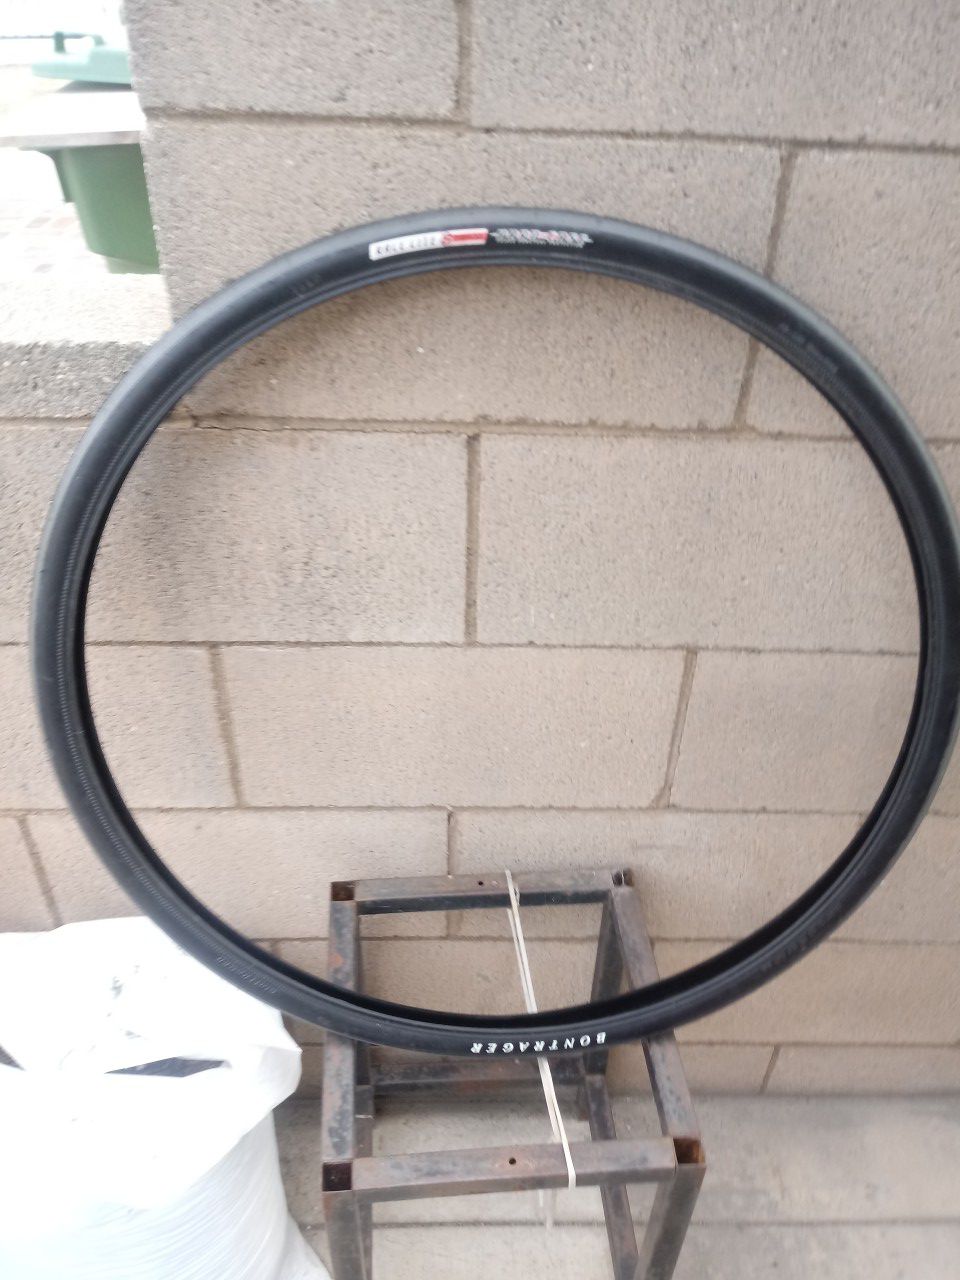 One bike tire size 700x32c